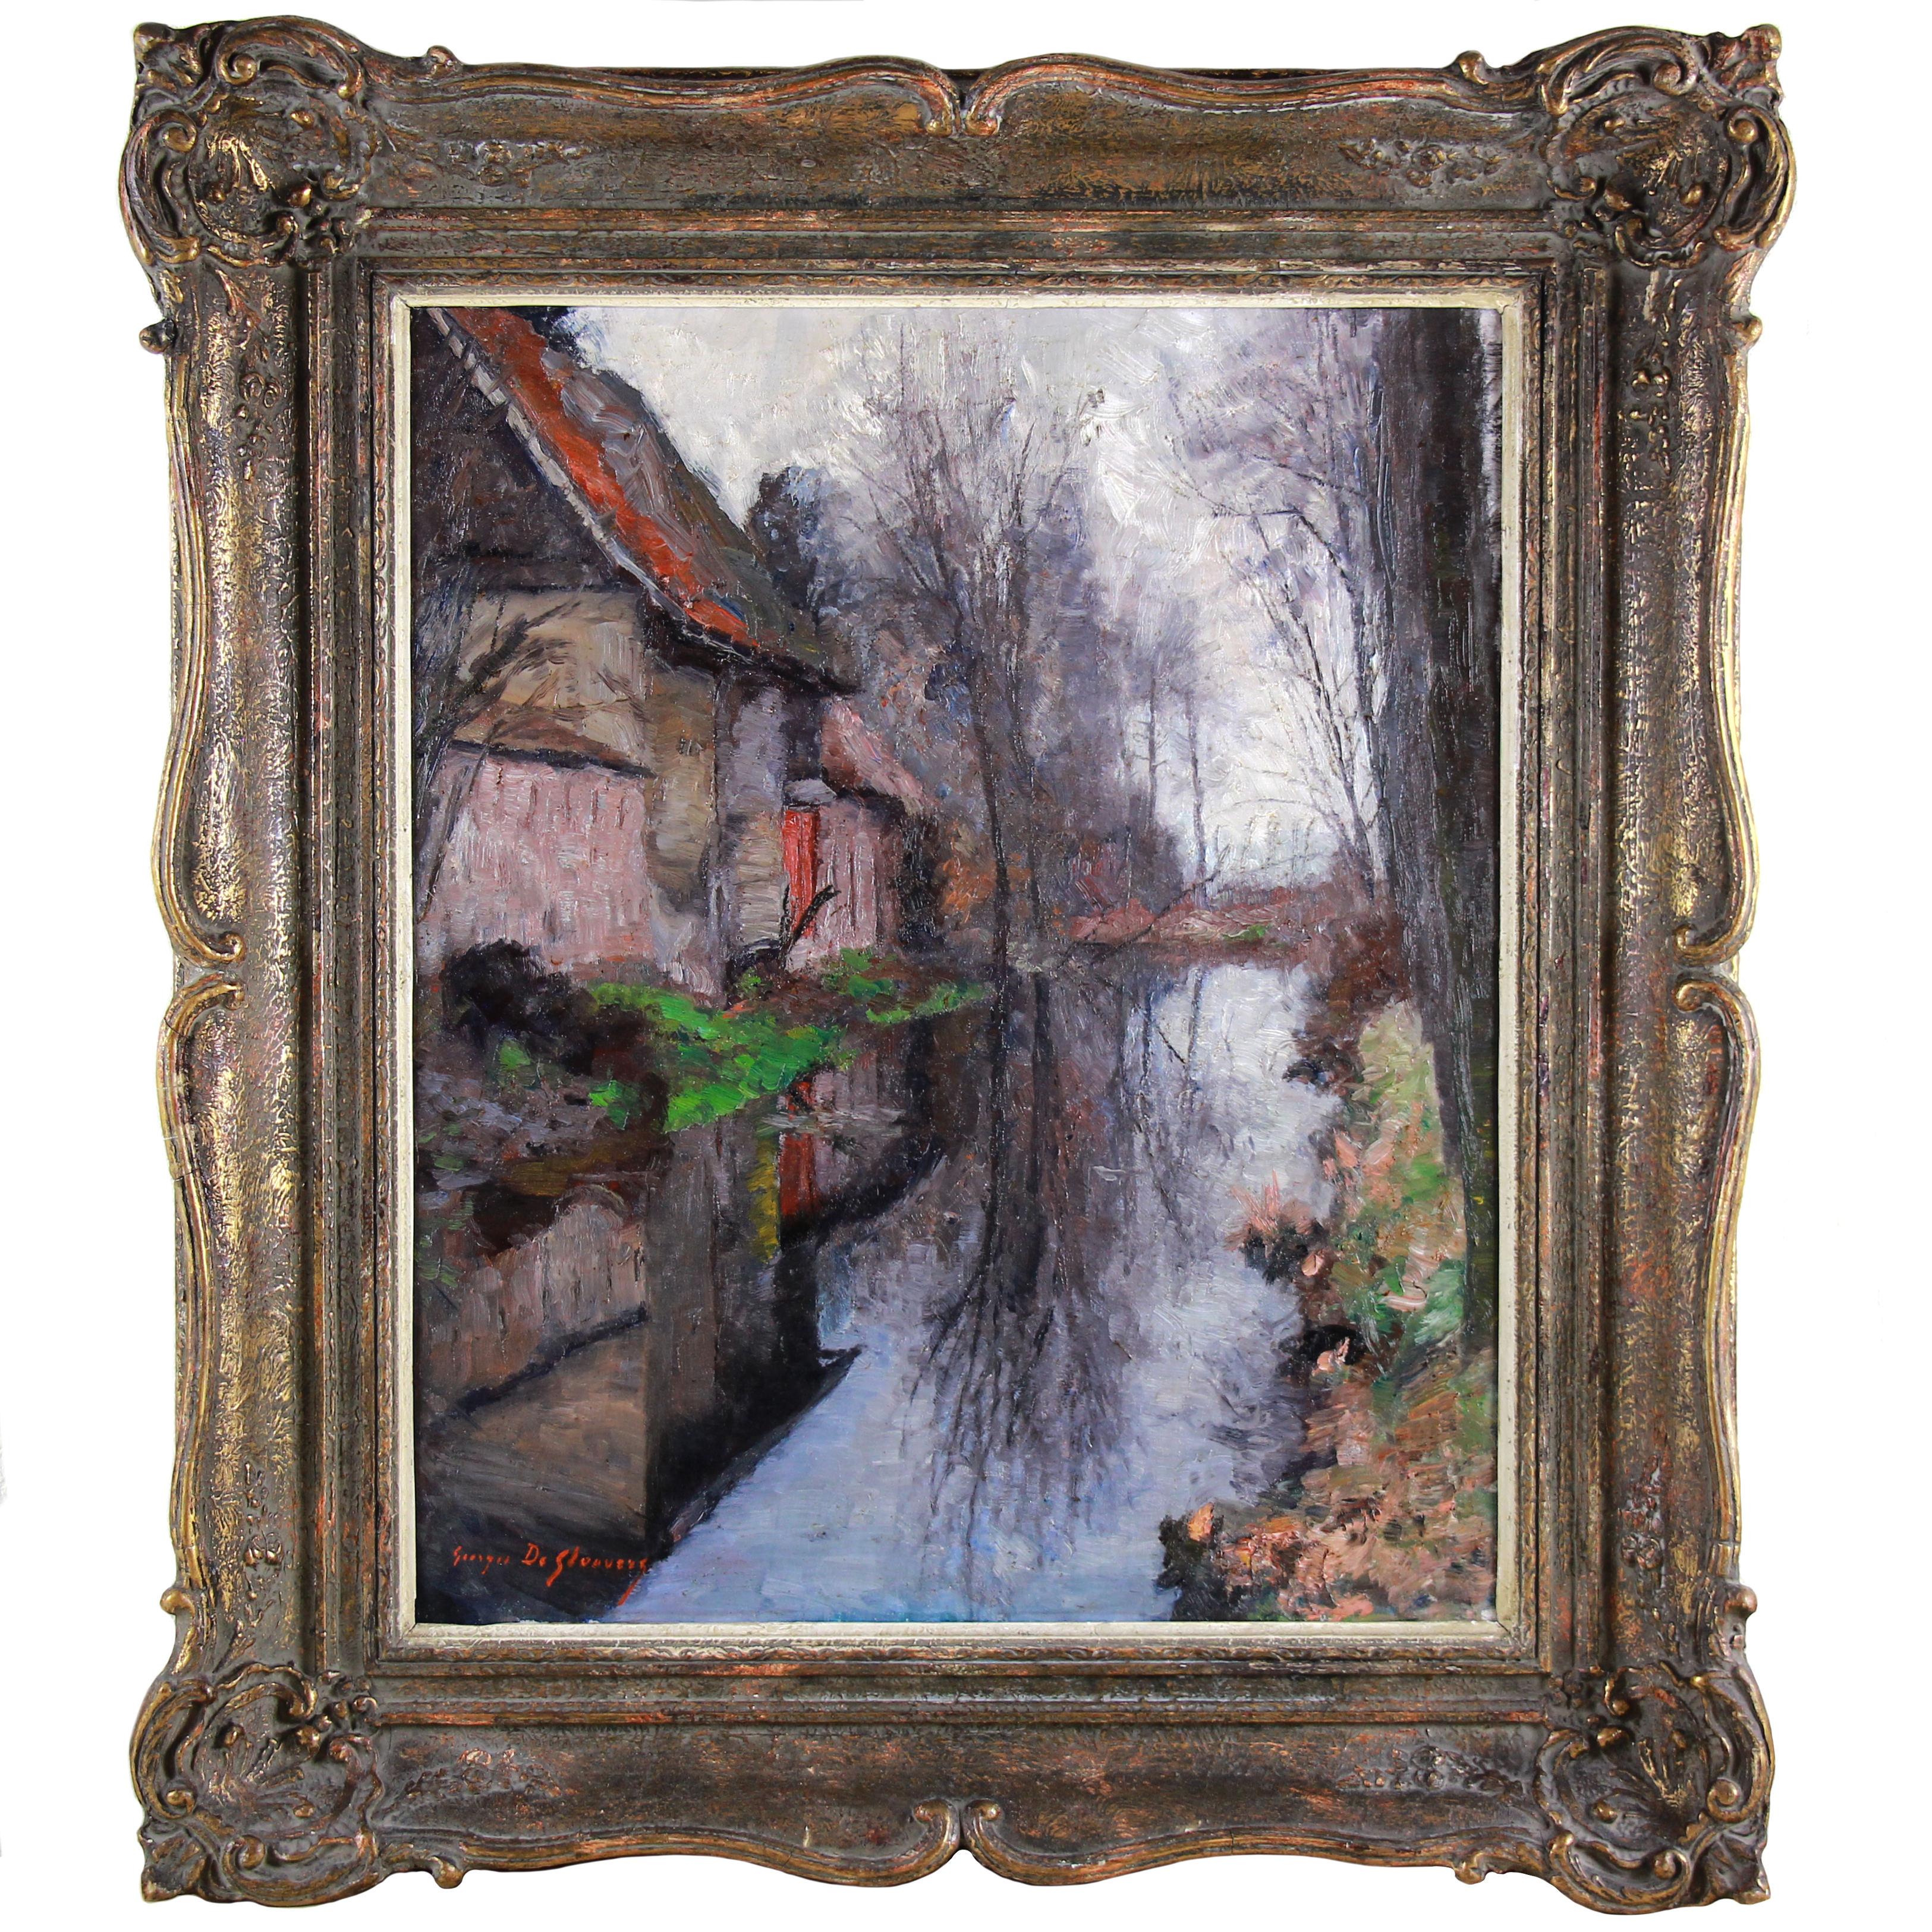 "Öl auf Leinwand "Reflexionen im Strom" von Georges De Slovere Impressionistischer Maler "
Biographie:

De Slovere Georges wurde am 4. August 1873 in Brügge geboren.
Er studierte an der Akademie der Schönen Künste in Brügge und erinnerte sich